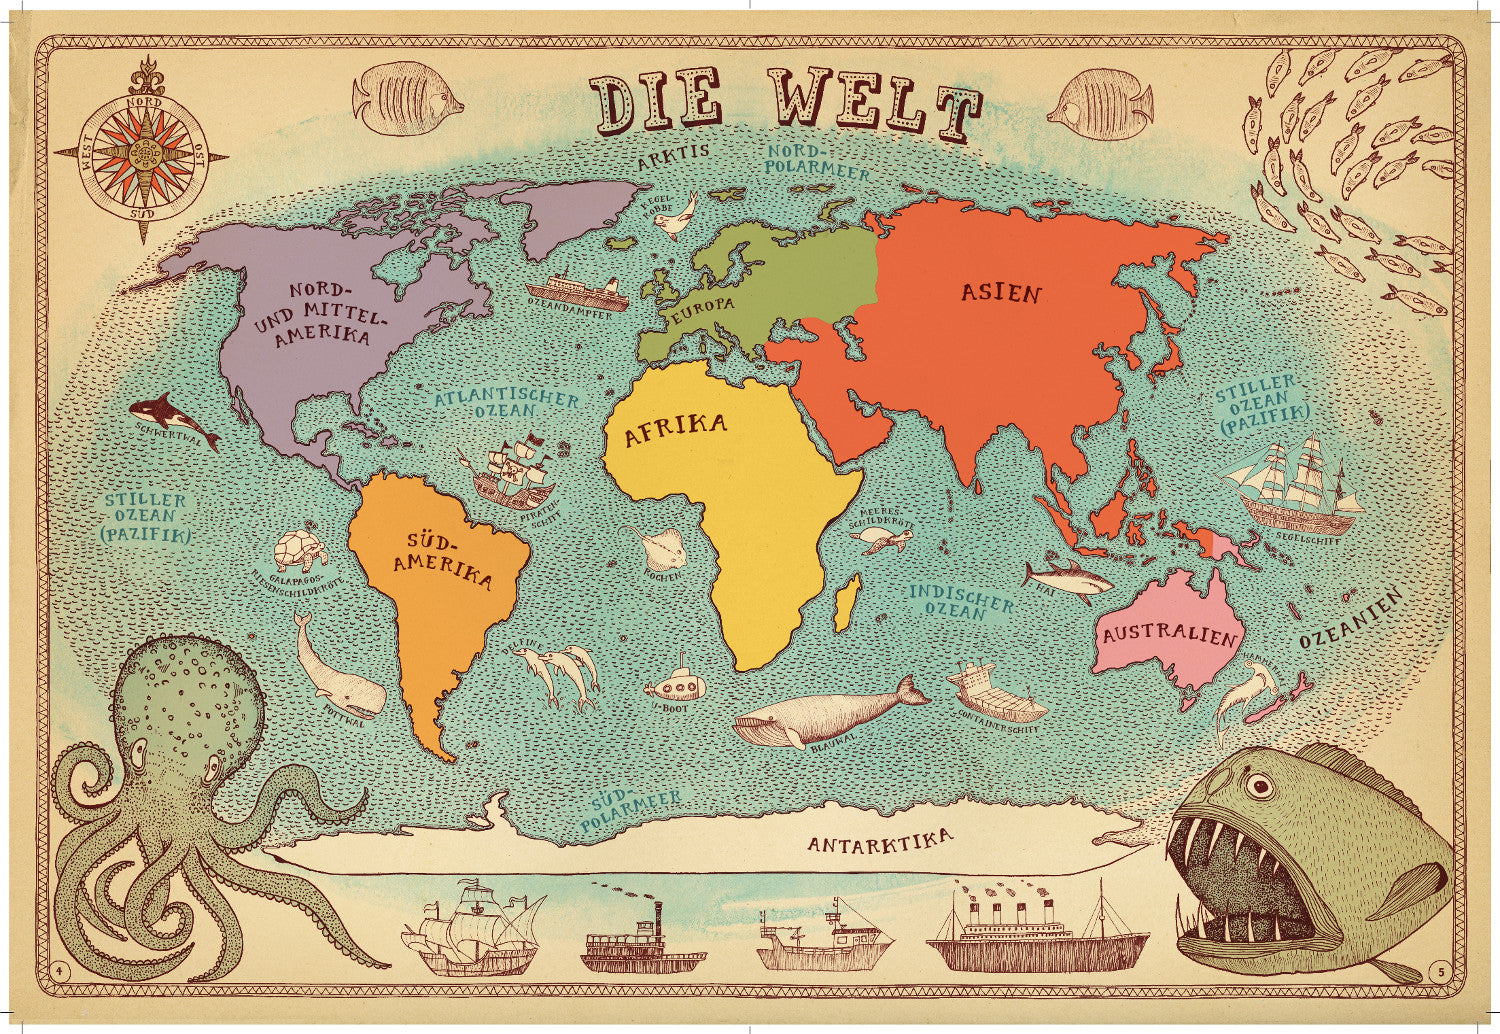 Alle Welt - Das Landkartenbuch (Abermals erweiterte Neuausgabe)